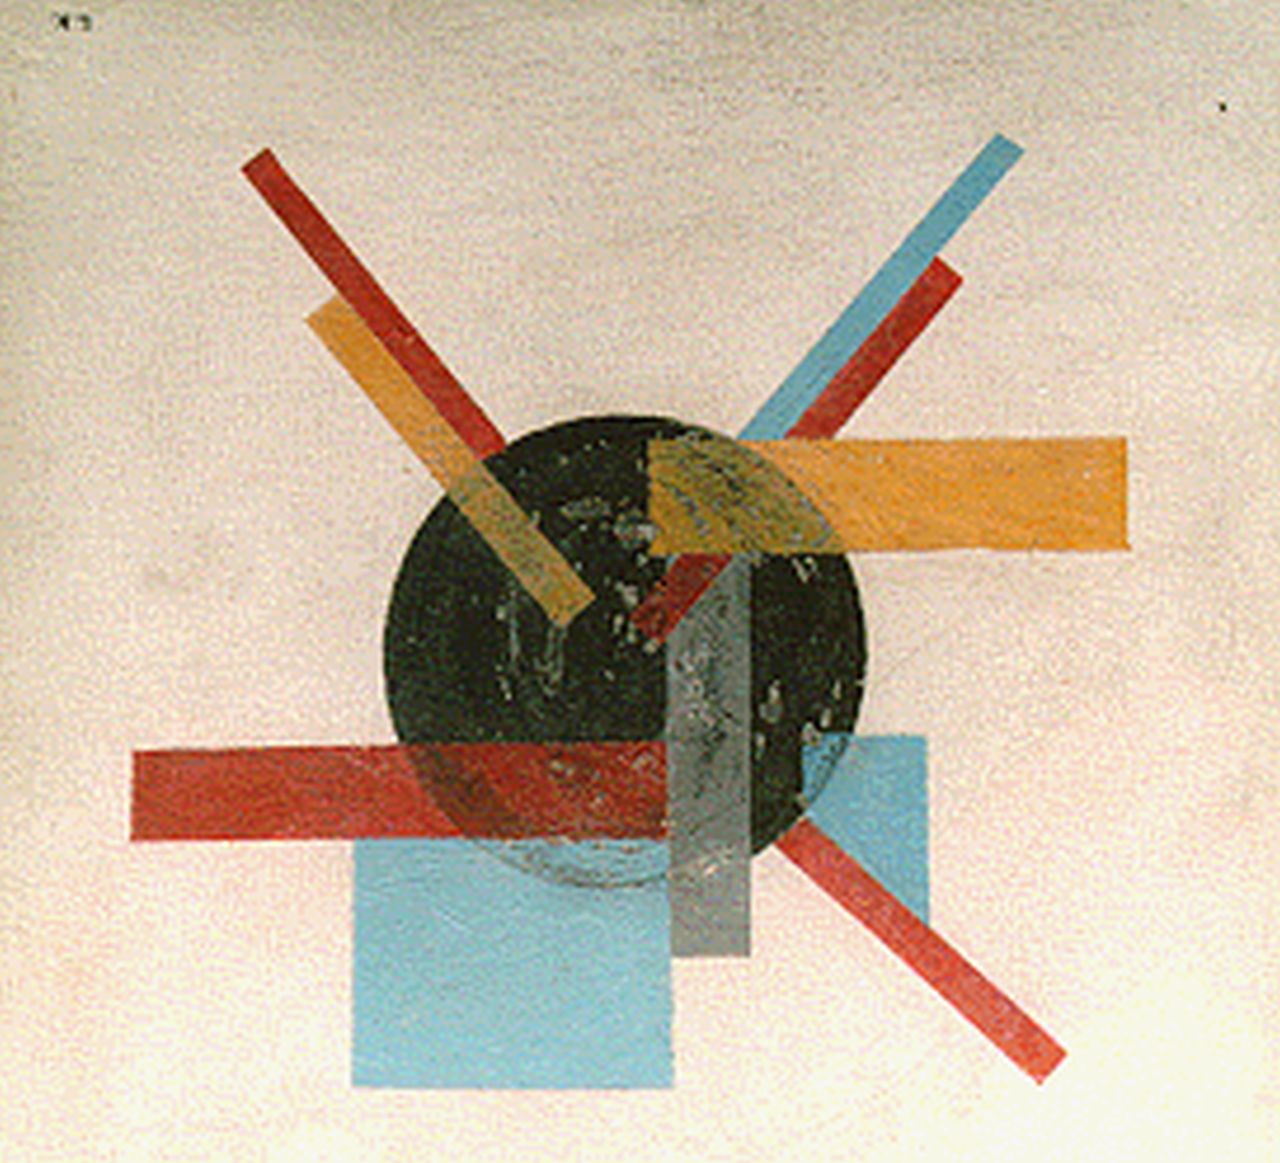 Kroha L.  | Ladislau Kroha, Suprematische compositie in zwart/rood geel en blauw, olieverf op paneel 25,1 x 25,7 cm, gesigneerd rechtsonder